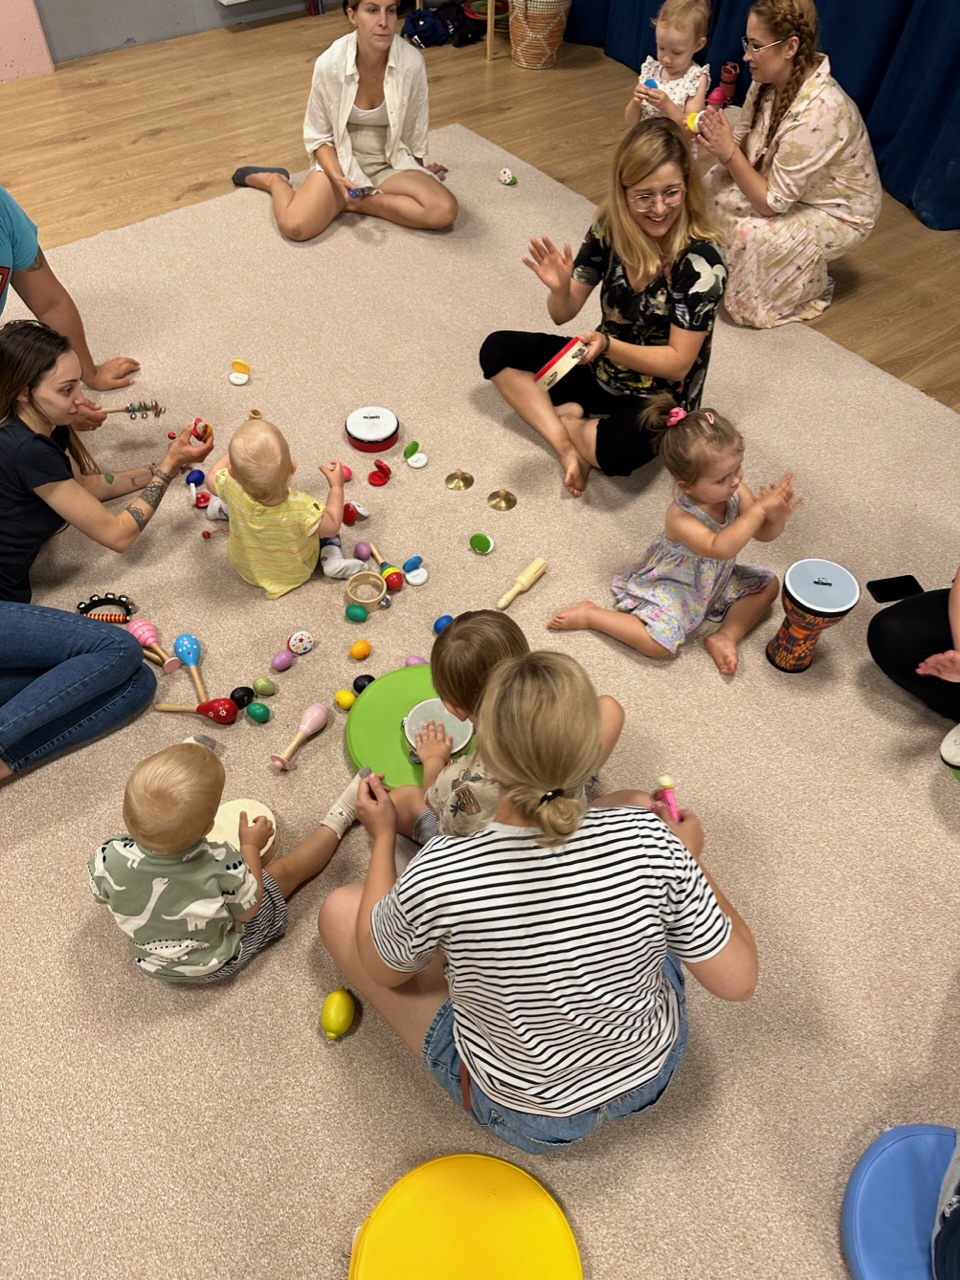 Zajęcia dla dzieci MUSICAL FAMILIES (0-4 lata) zajęcia w duchu POMELODY w Warszawie